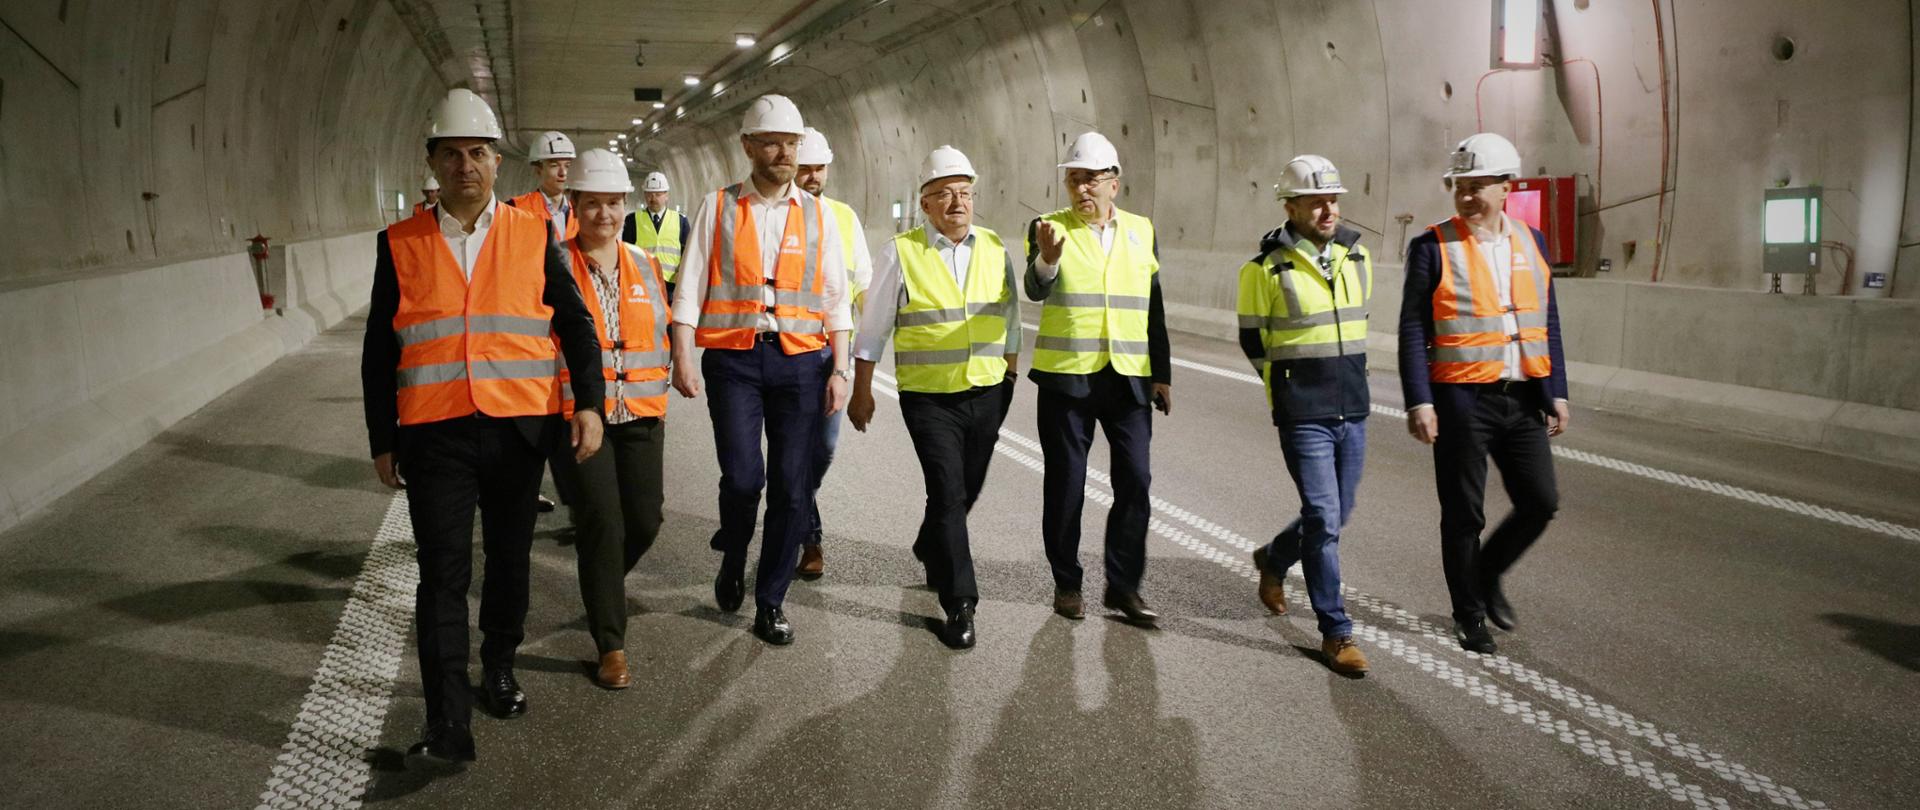 Minister infrastruktury Andrzej Adamczyk podczas wizytacji budowy tunelu łączącego wyspy Uznam i Wolin w Świnoujściu